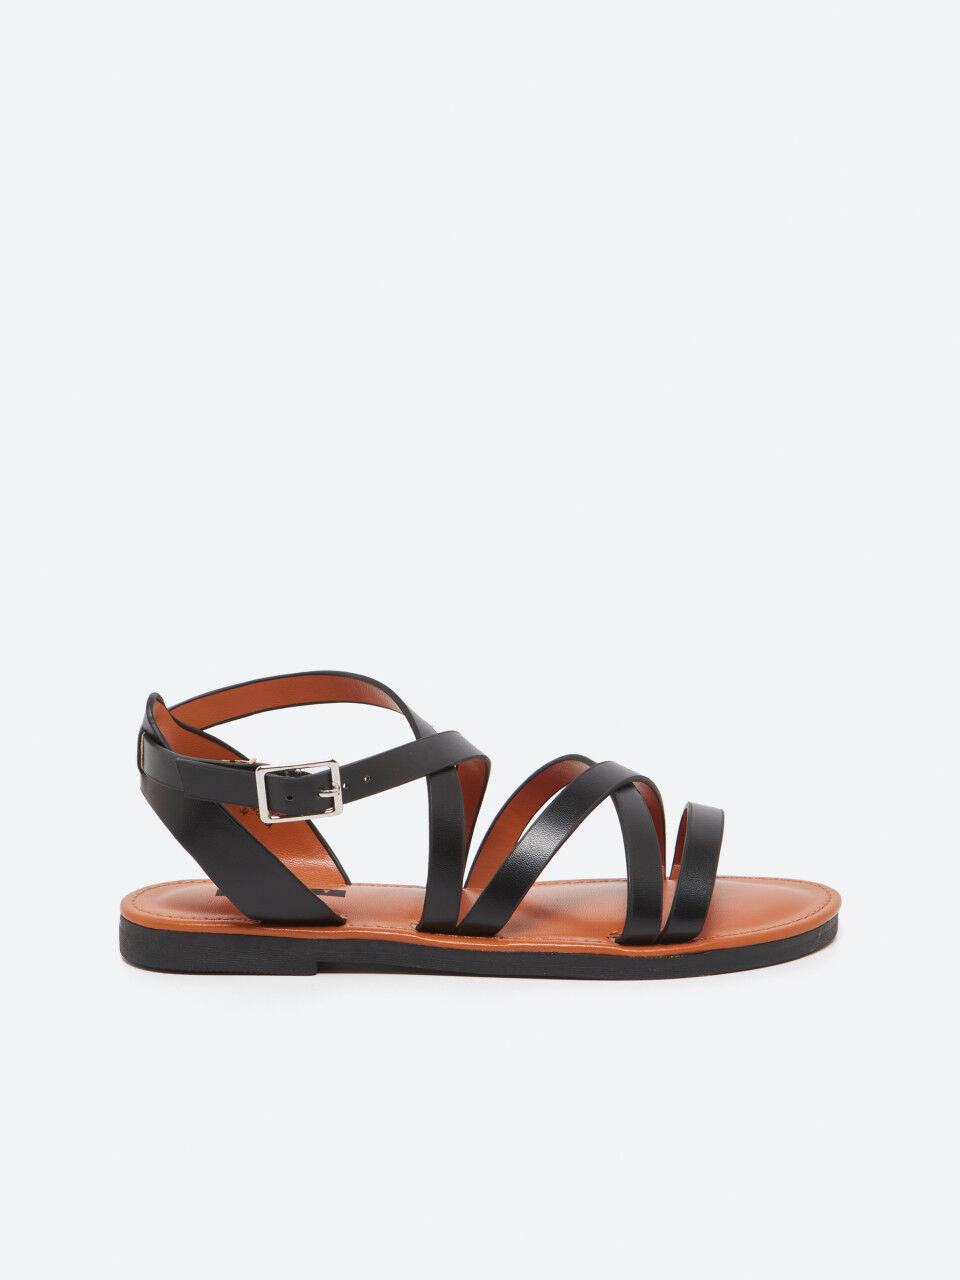 Criss-cross sandals